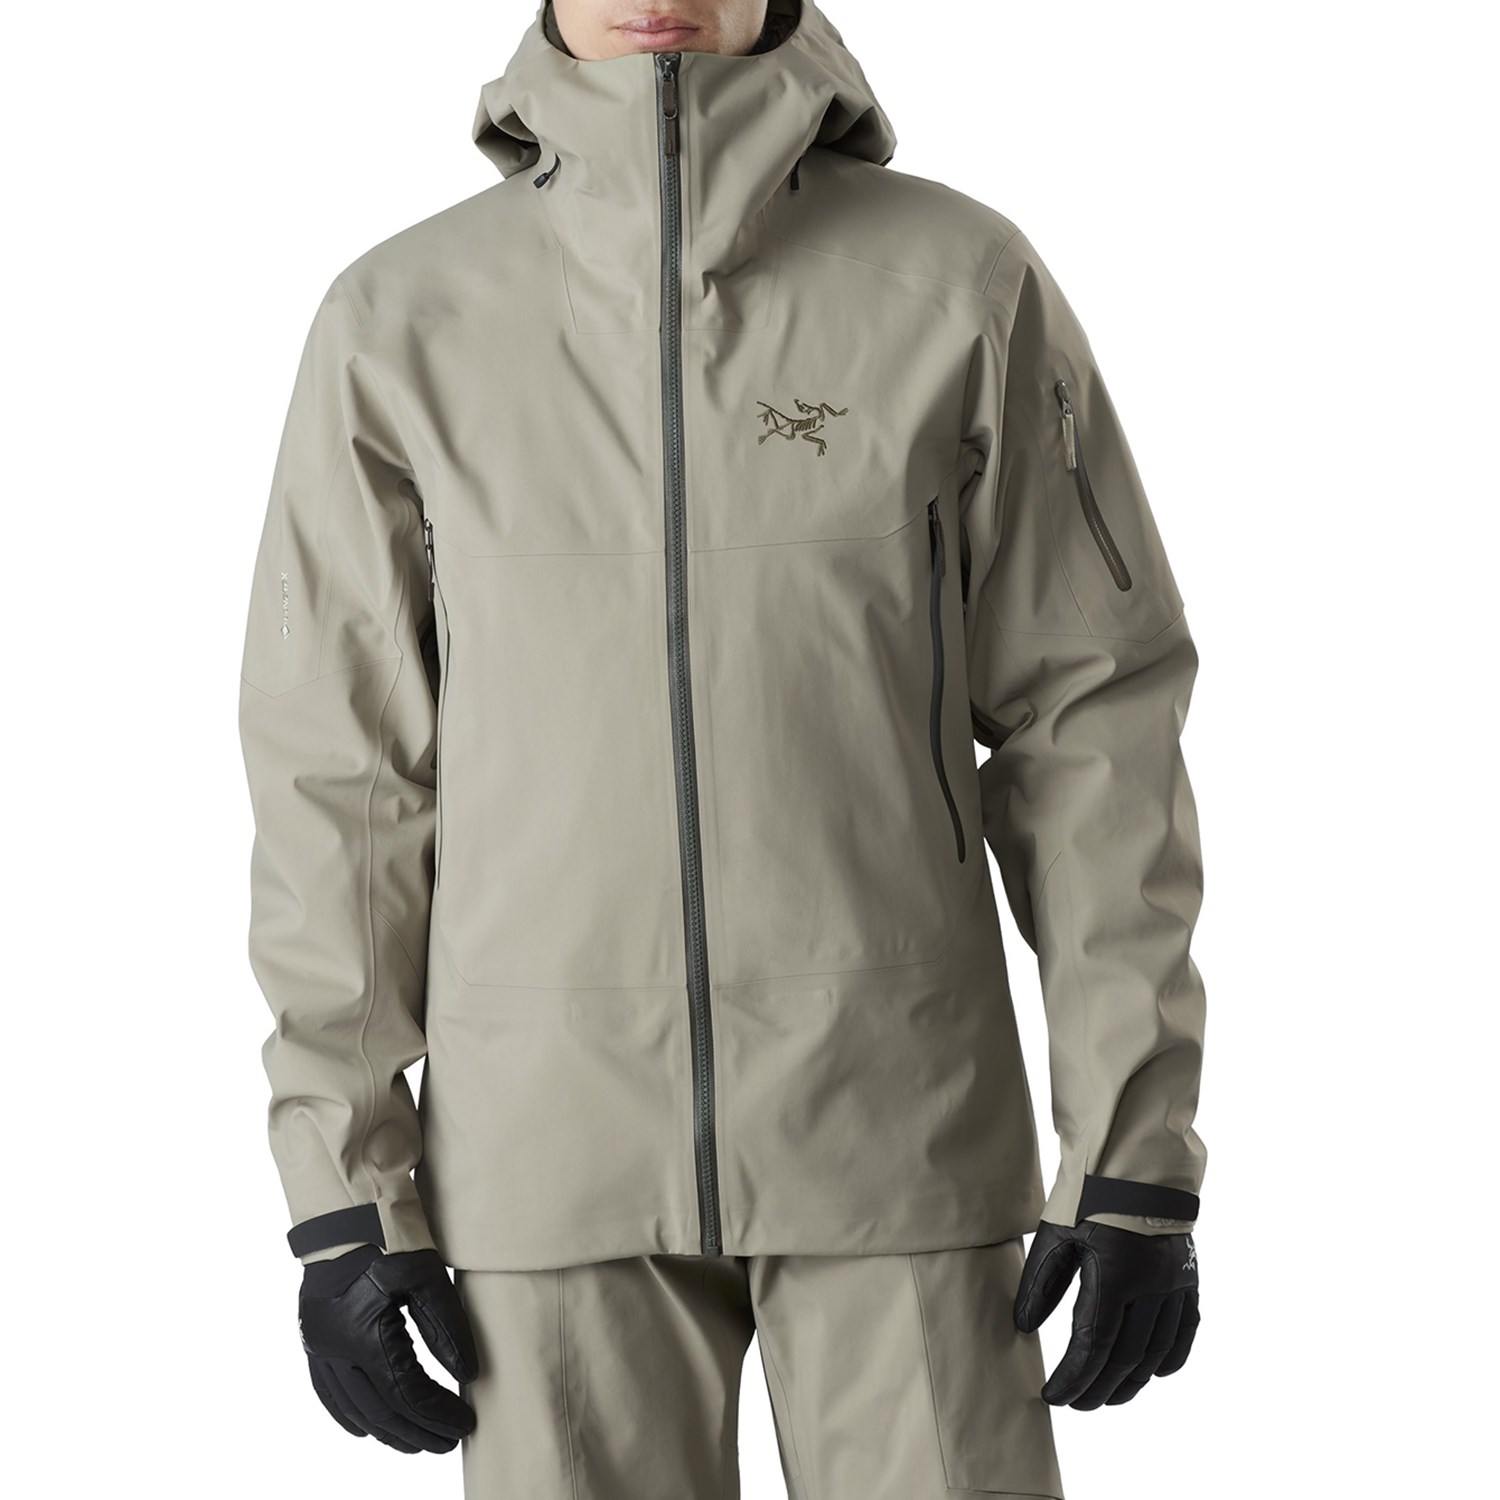 Arc'teryx Sabre Jacket size men's s/p